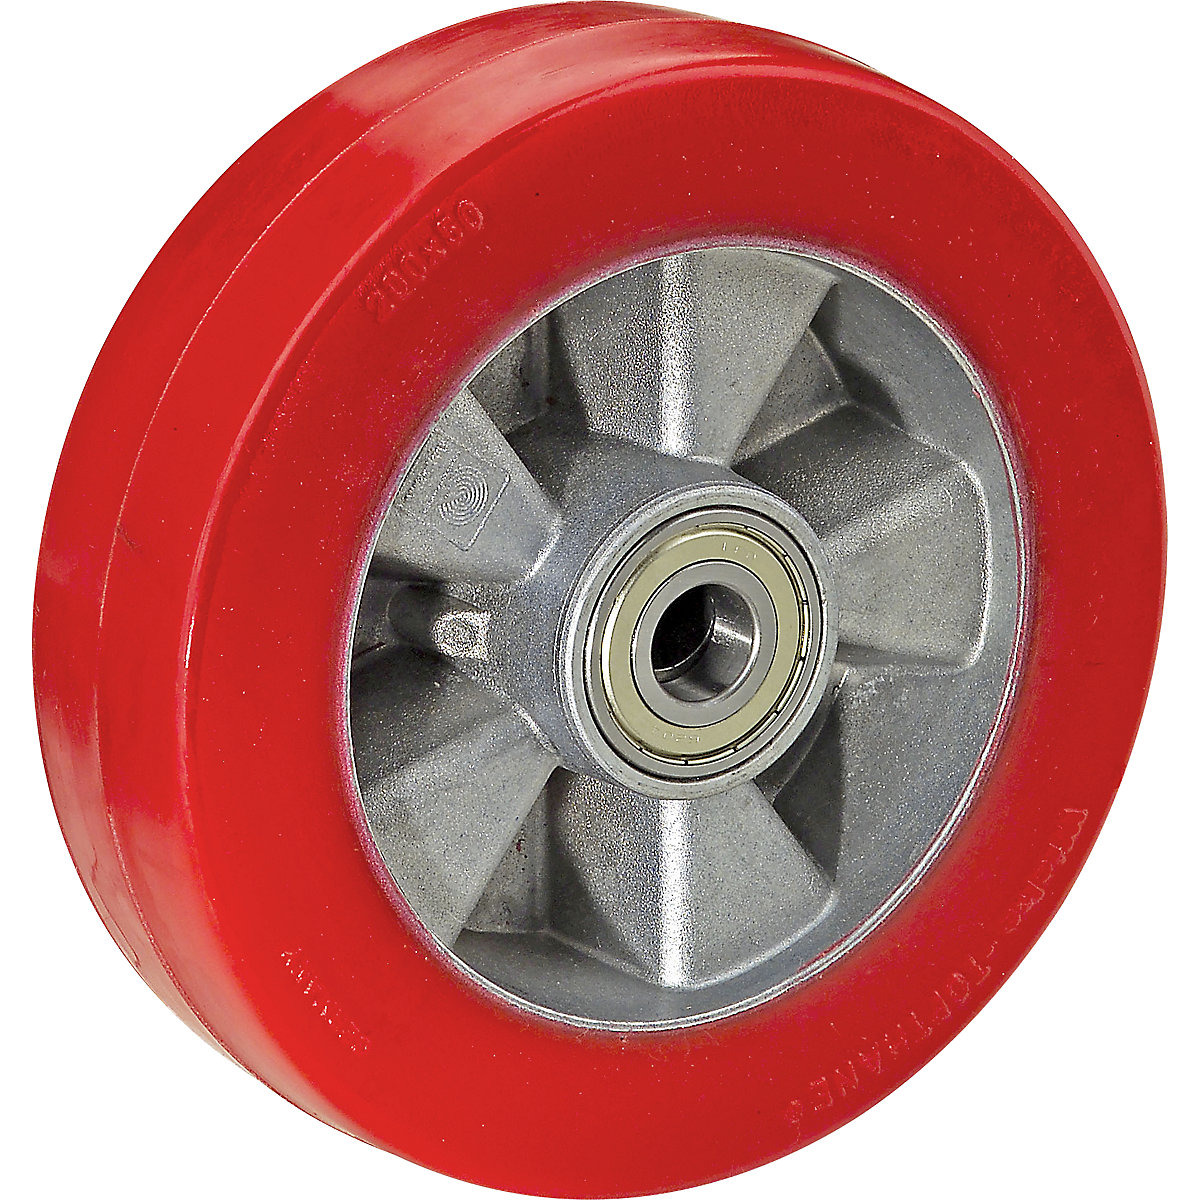 Poliuretanski kotač u crvenoj boji na aluminijskom naplatku – Wicke